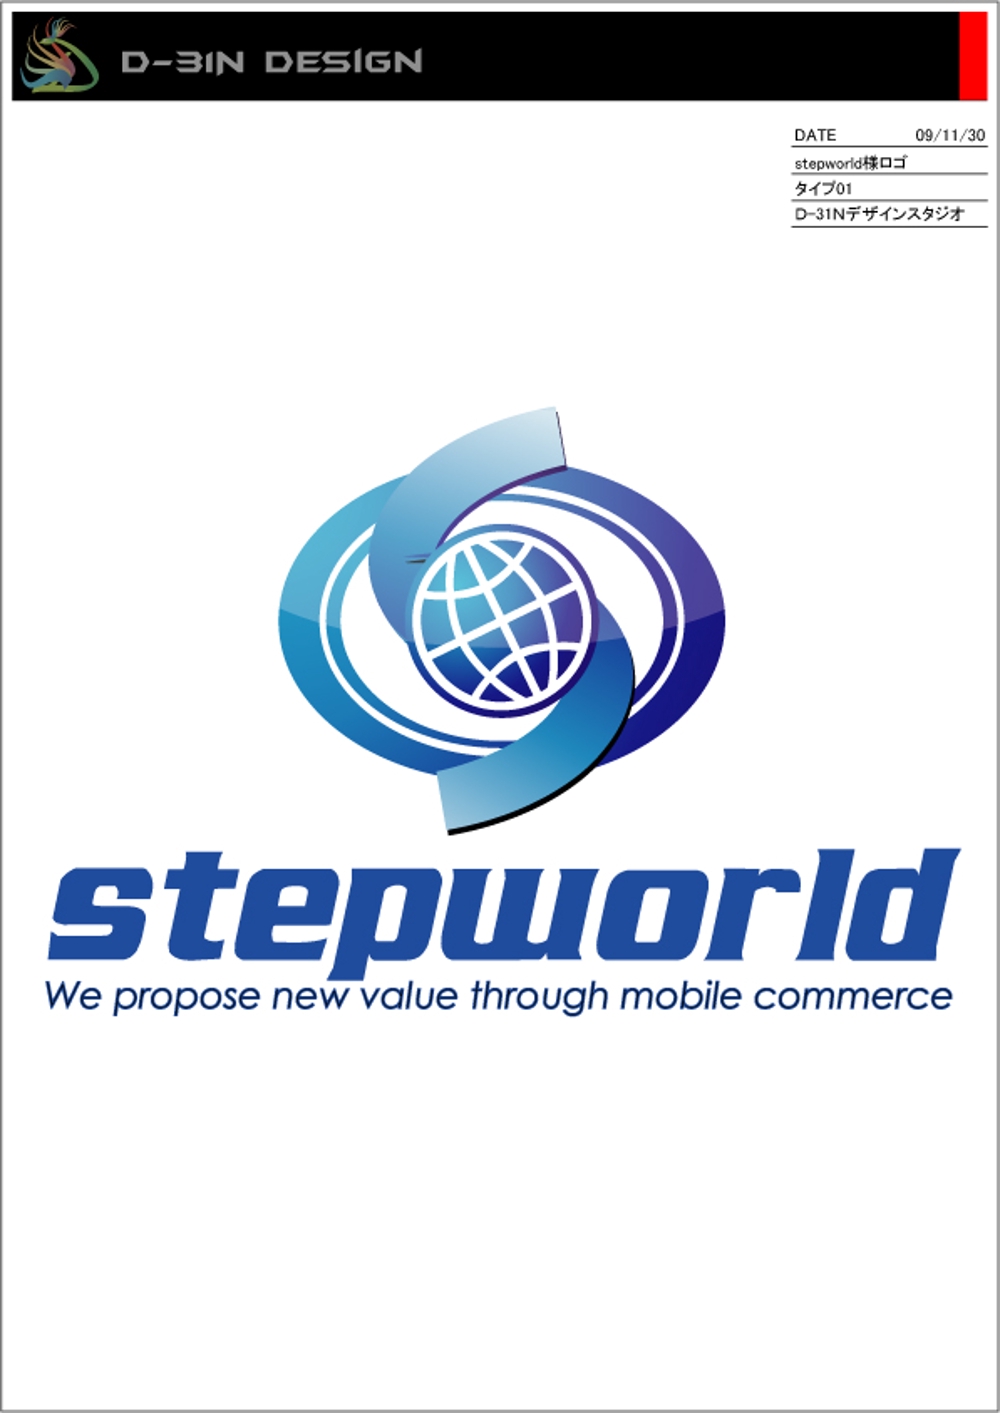 stepworld-logo01.jpg